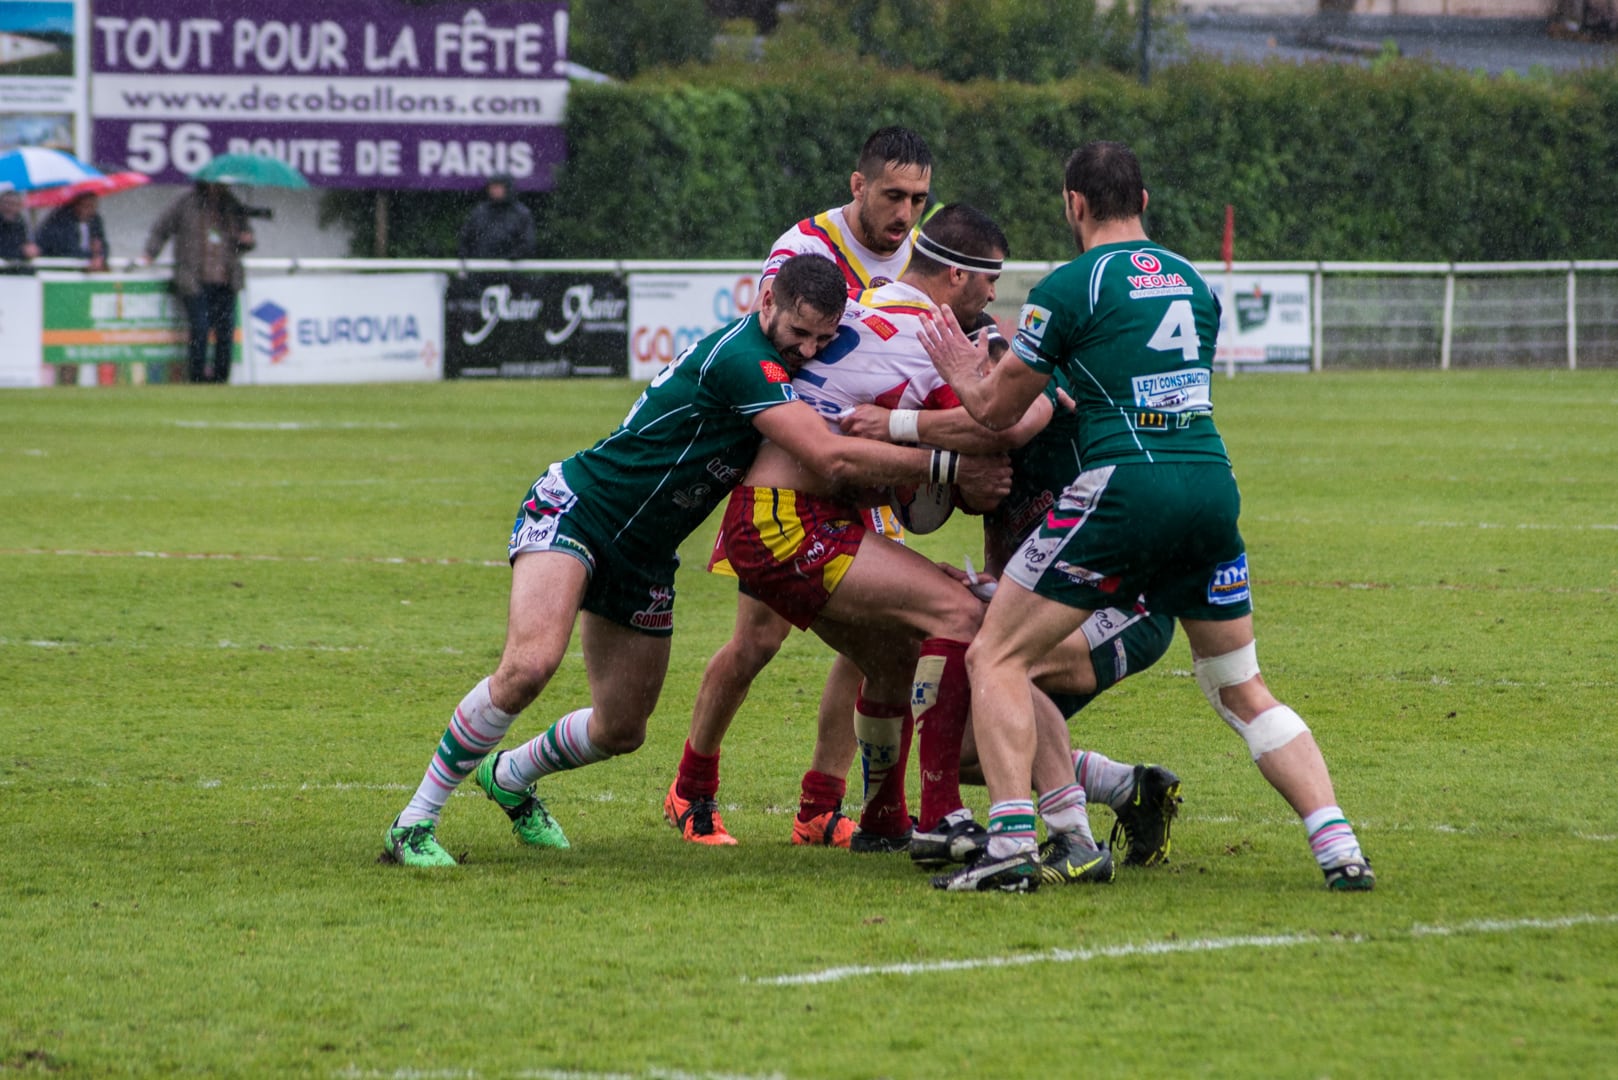 Photo de la demi finale du championnat de France de Rugby à XIII, Lezignan - St Estève 16